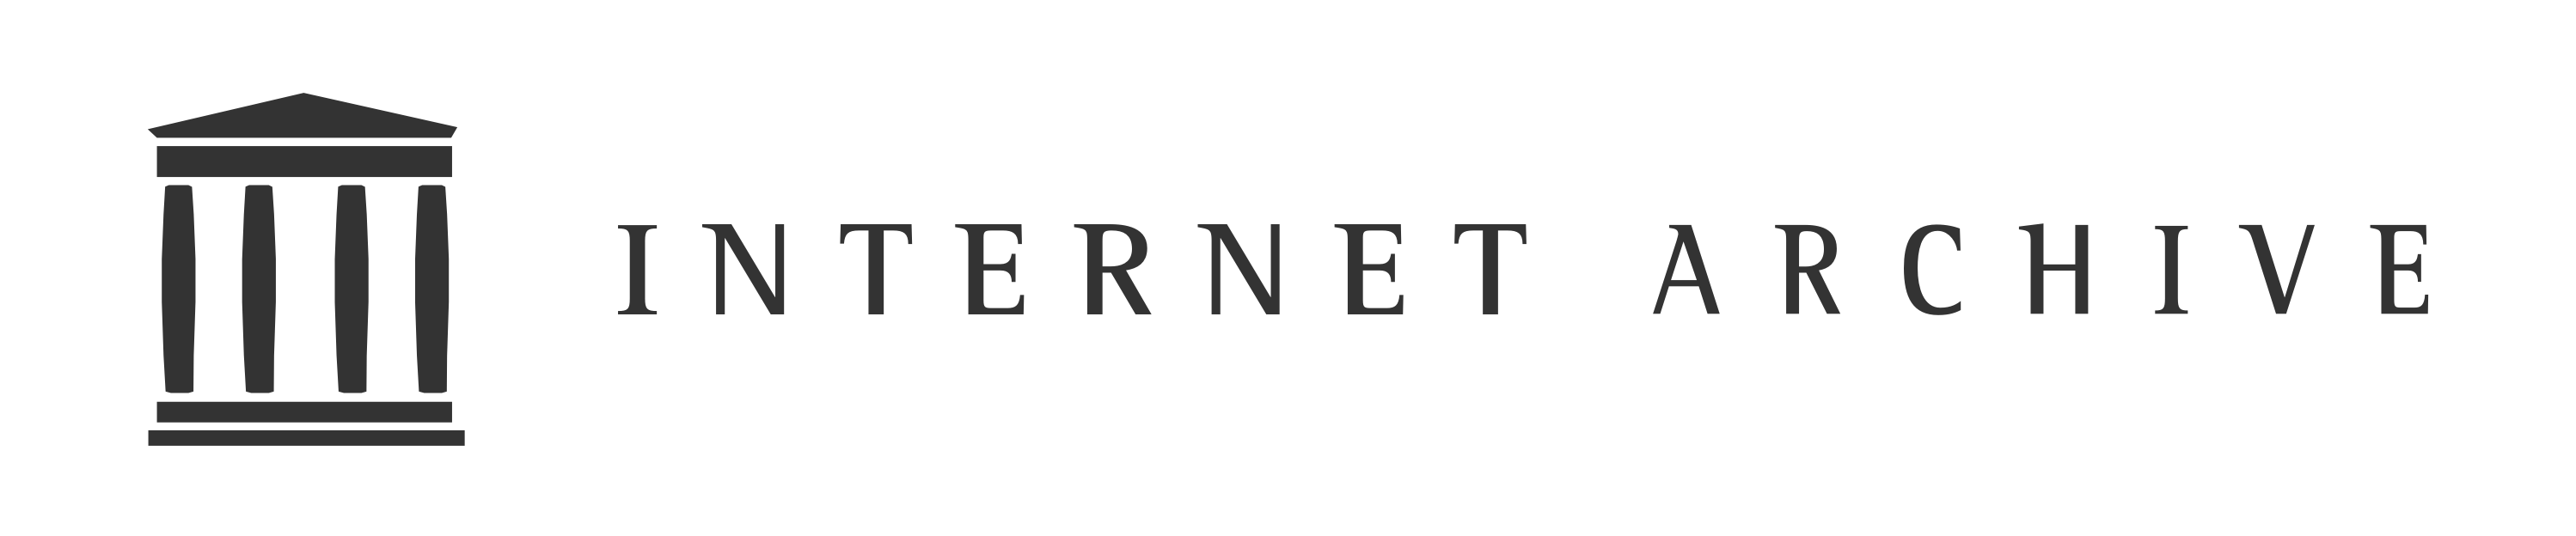 internet-archive-banner-black-logo.png